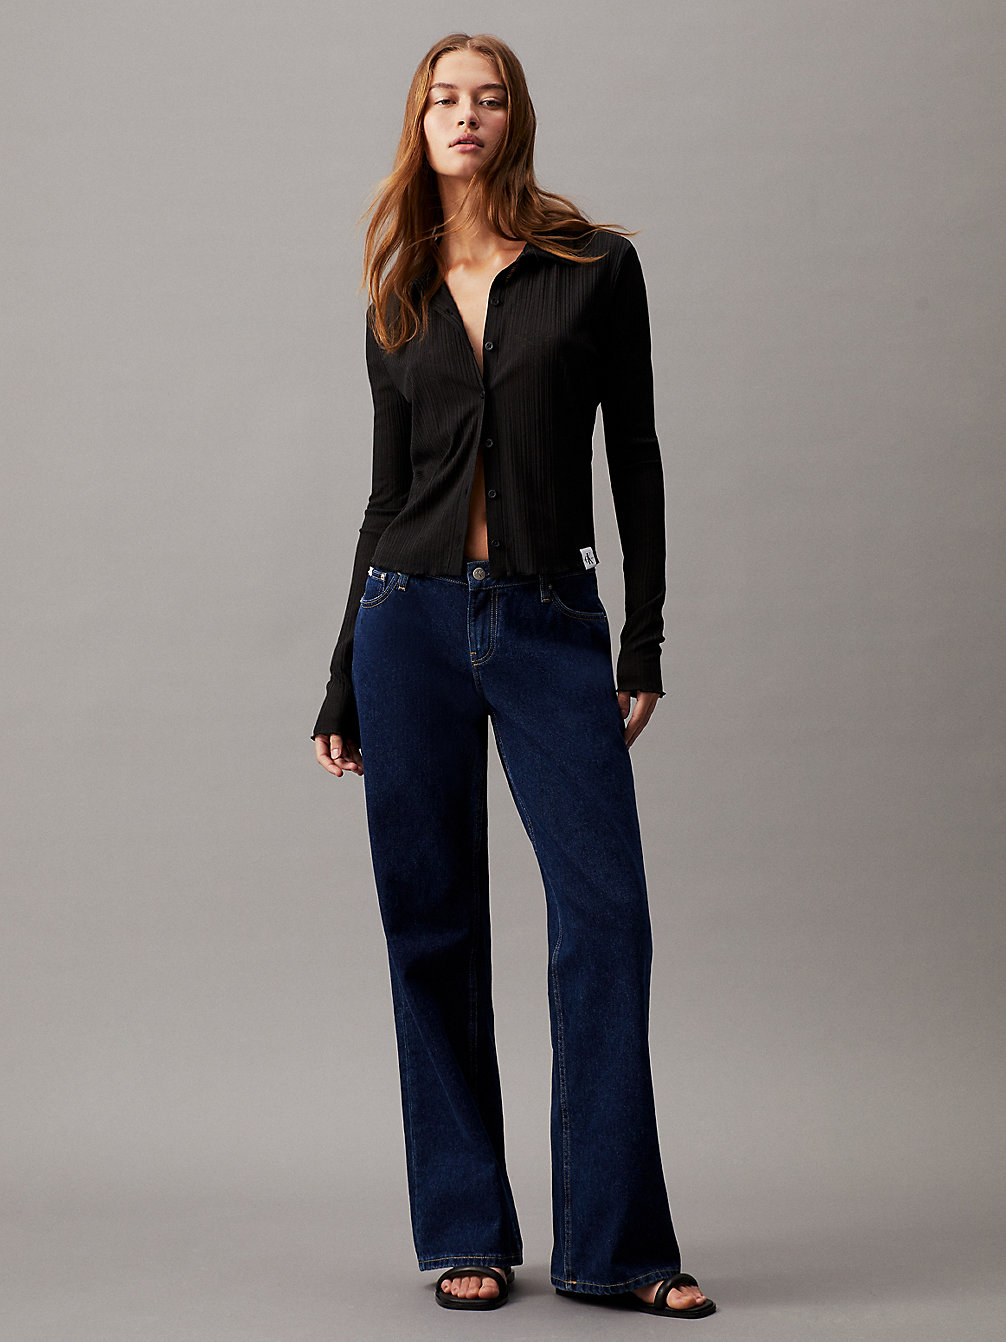 CK BLACK Transparentes, Tailliertes Hemd Mit Rippen undefined Damen Calvin Klein